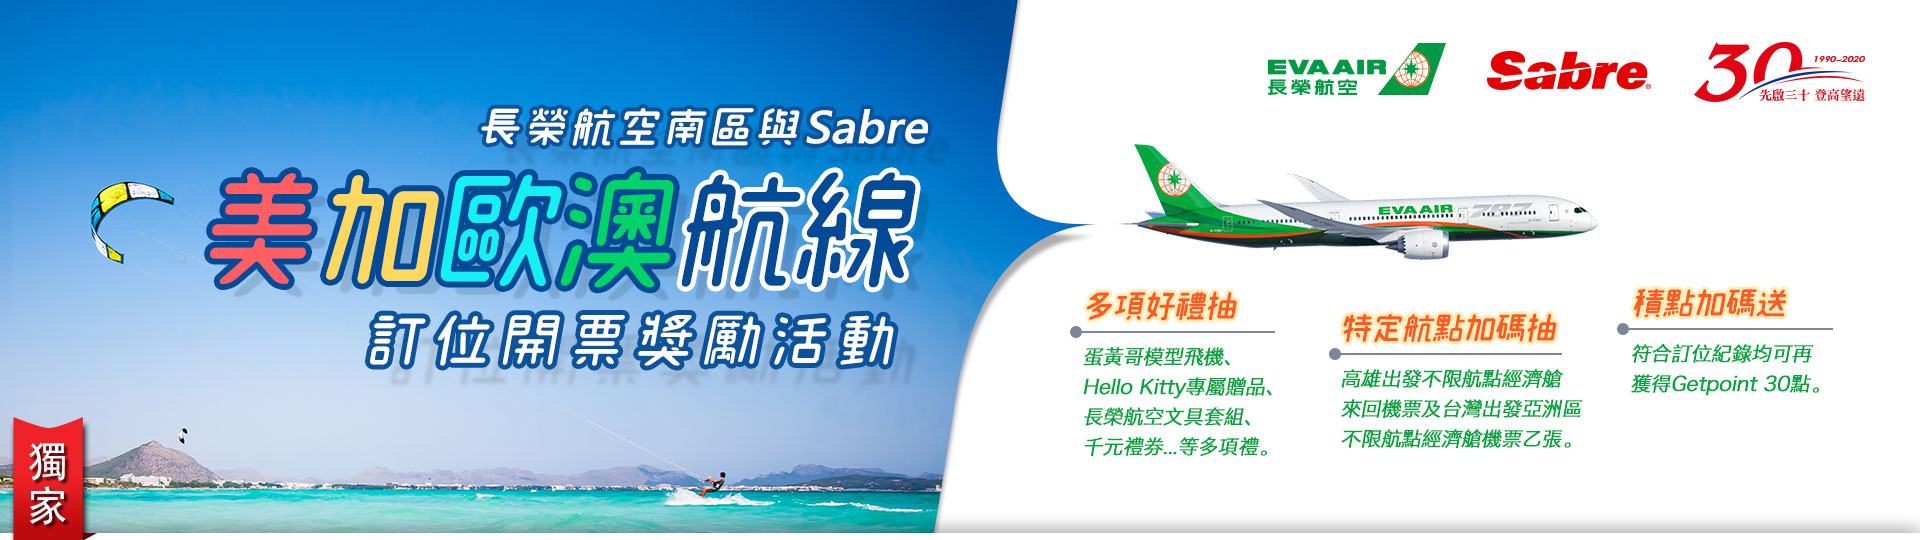 長榮航空南區與Sabre美加航線訂位開票獎勵活動